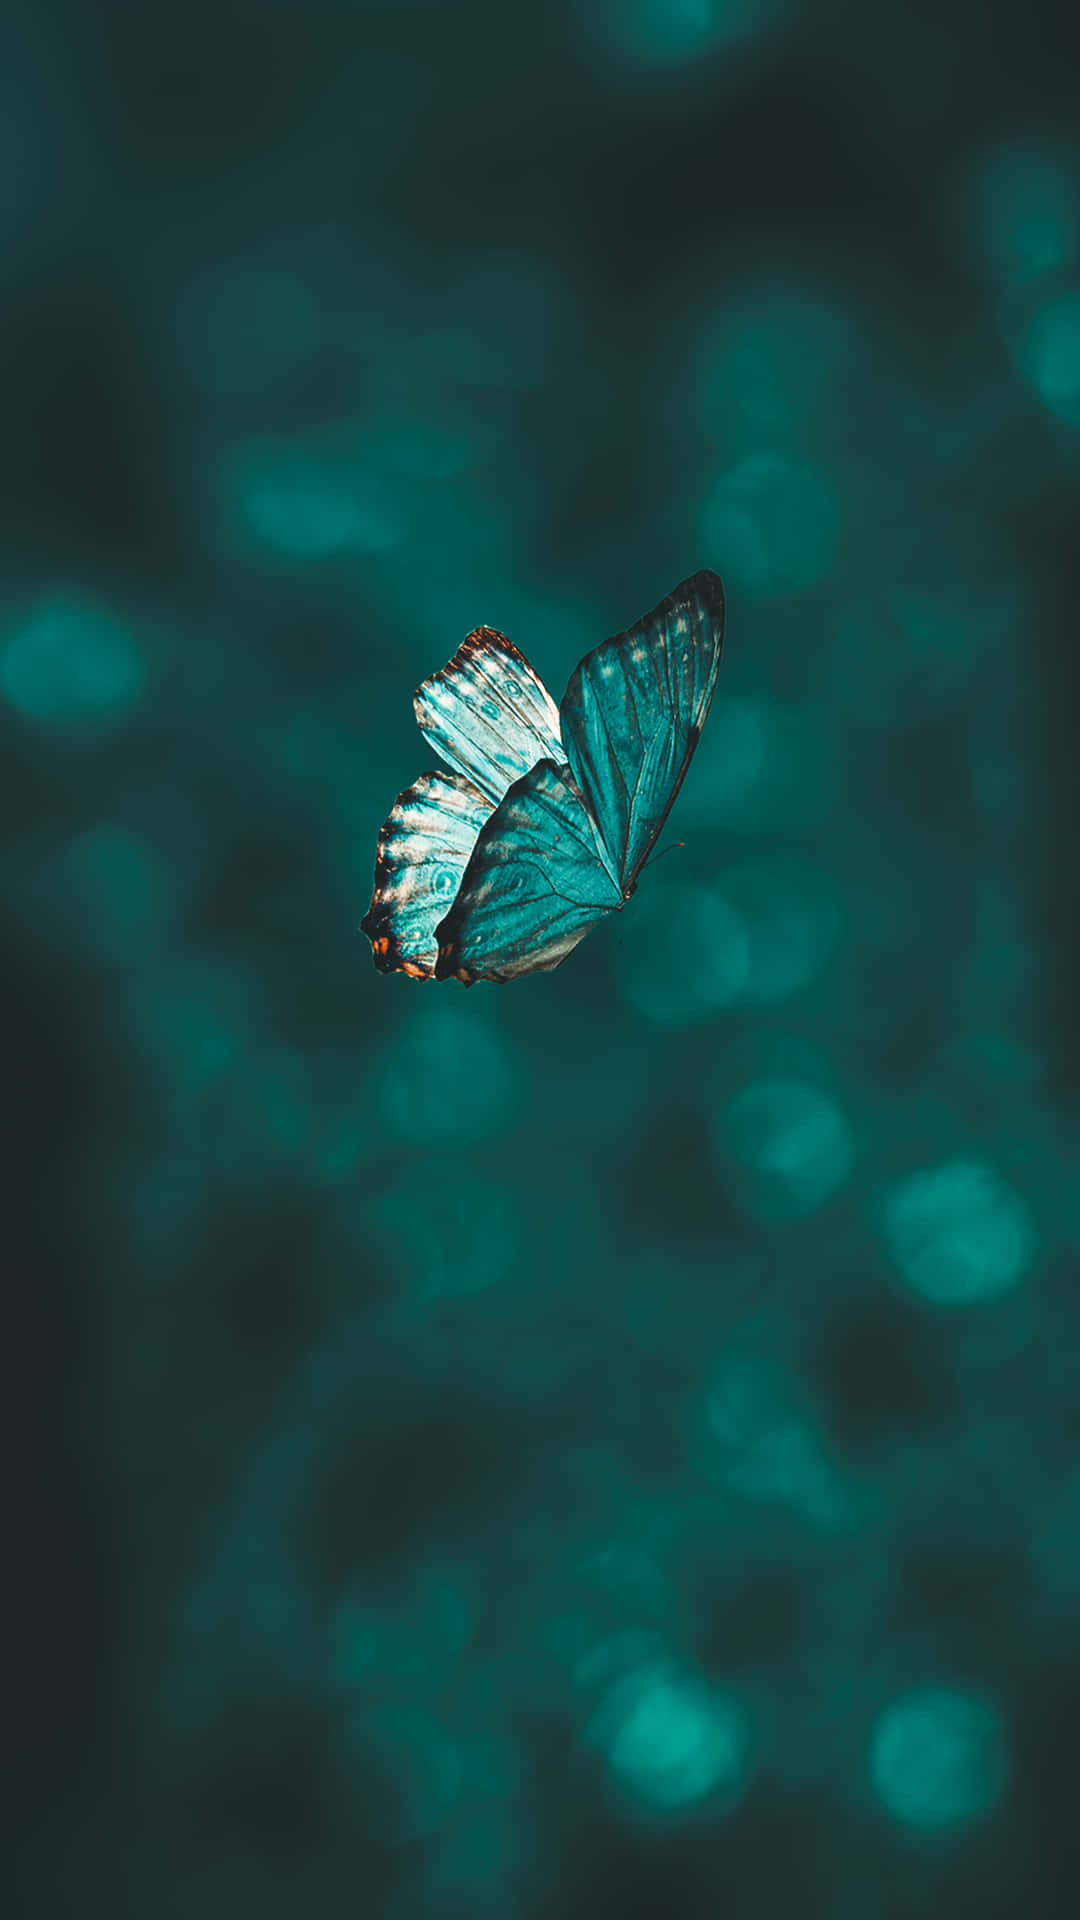 Majestic Butterflies In A Dreamy Aesthetic